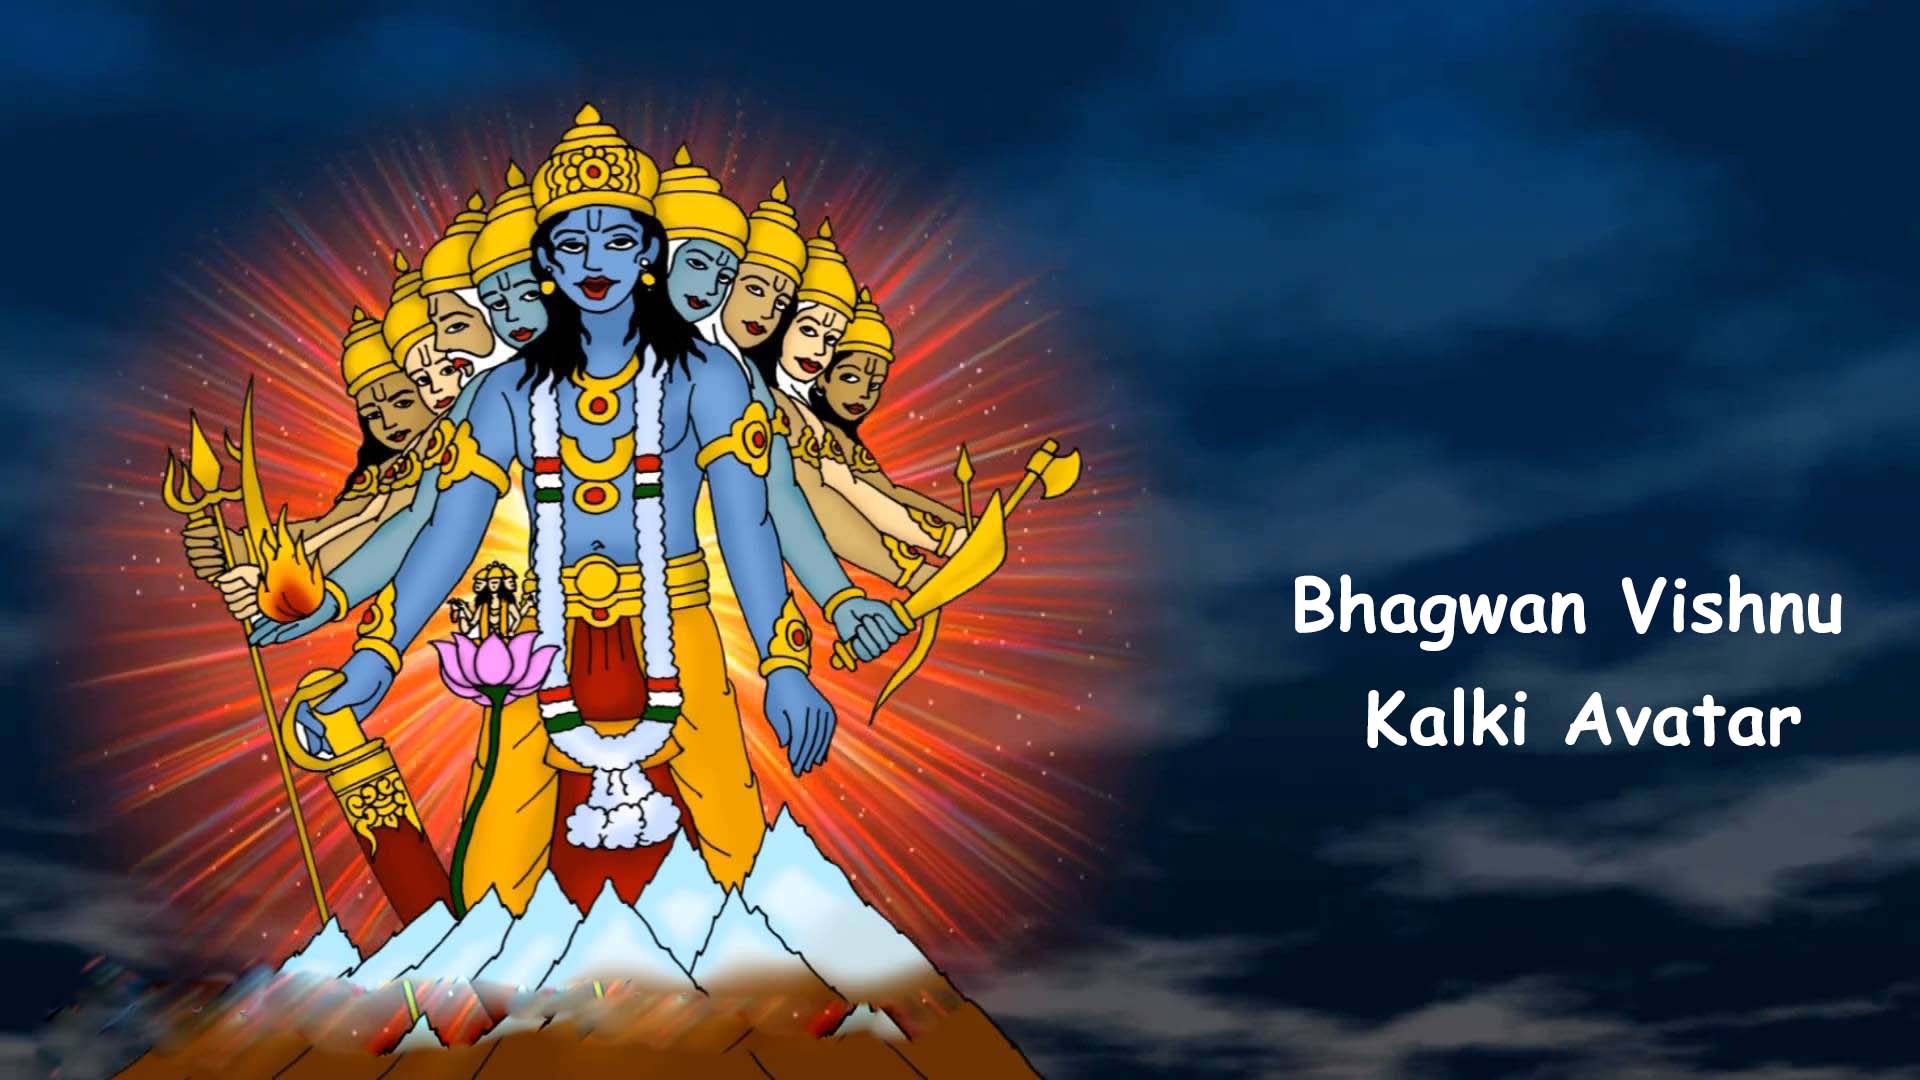 Bhagwan vishnu kalki avatar hindu gods and goddesses